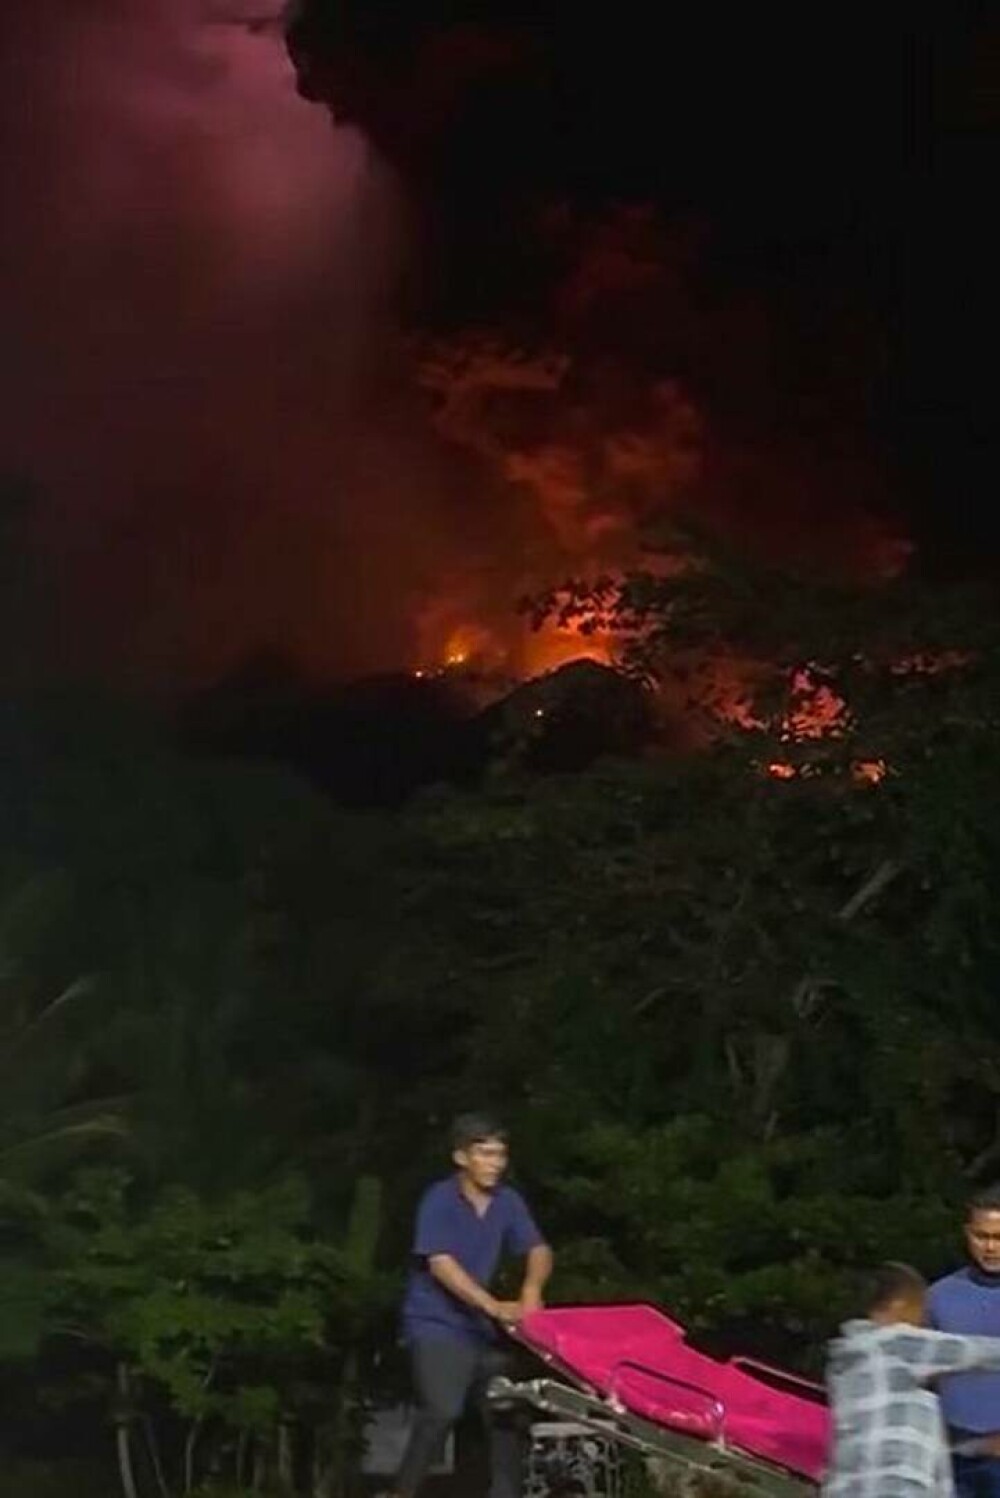 Fulgere violet în noapte și imagini desprinse parcă din altă lume. A erupt vulcanul Ruang: ”Fugim, oameni buni!” FOTO&VIDEO - Imaginea 5